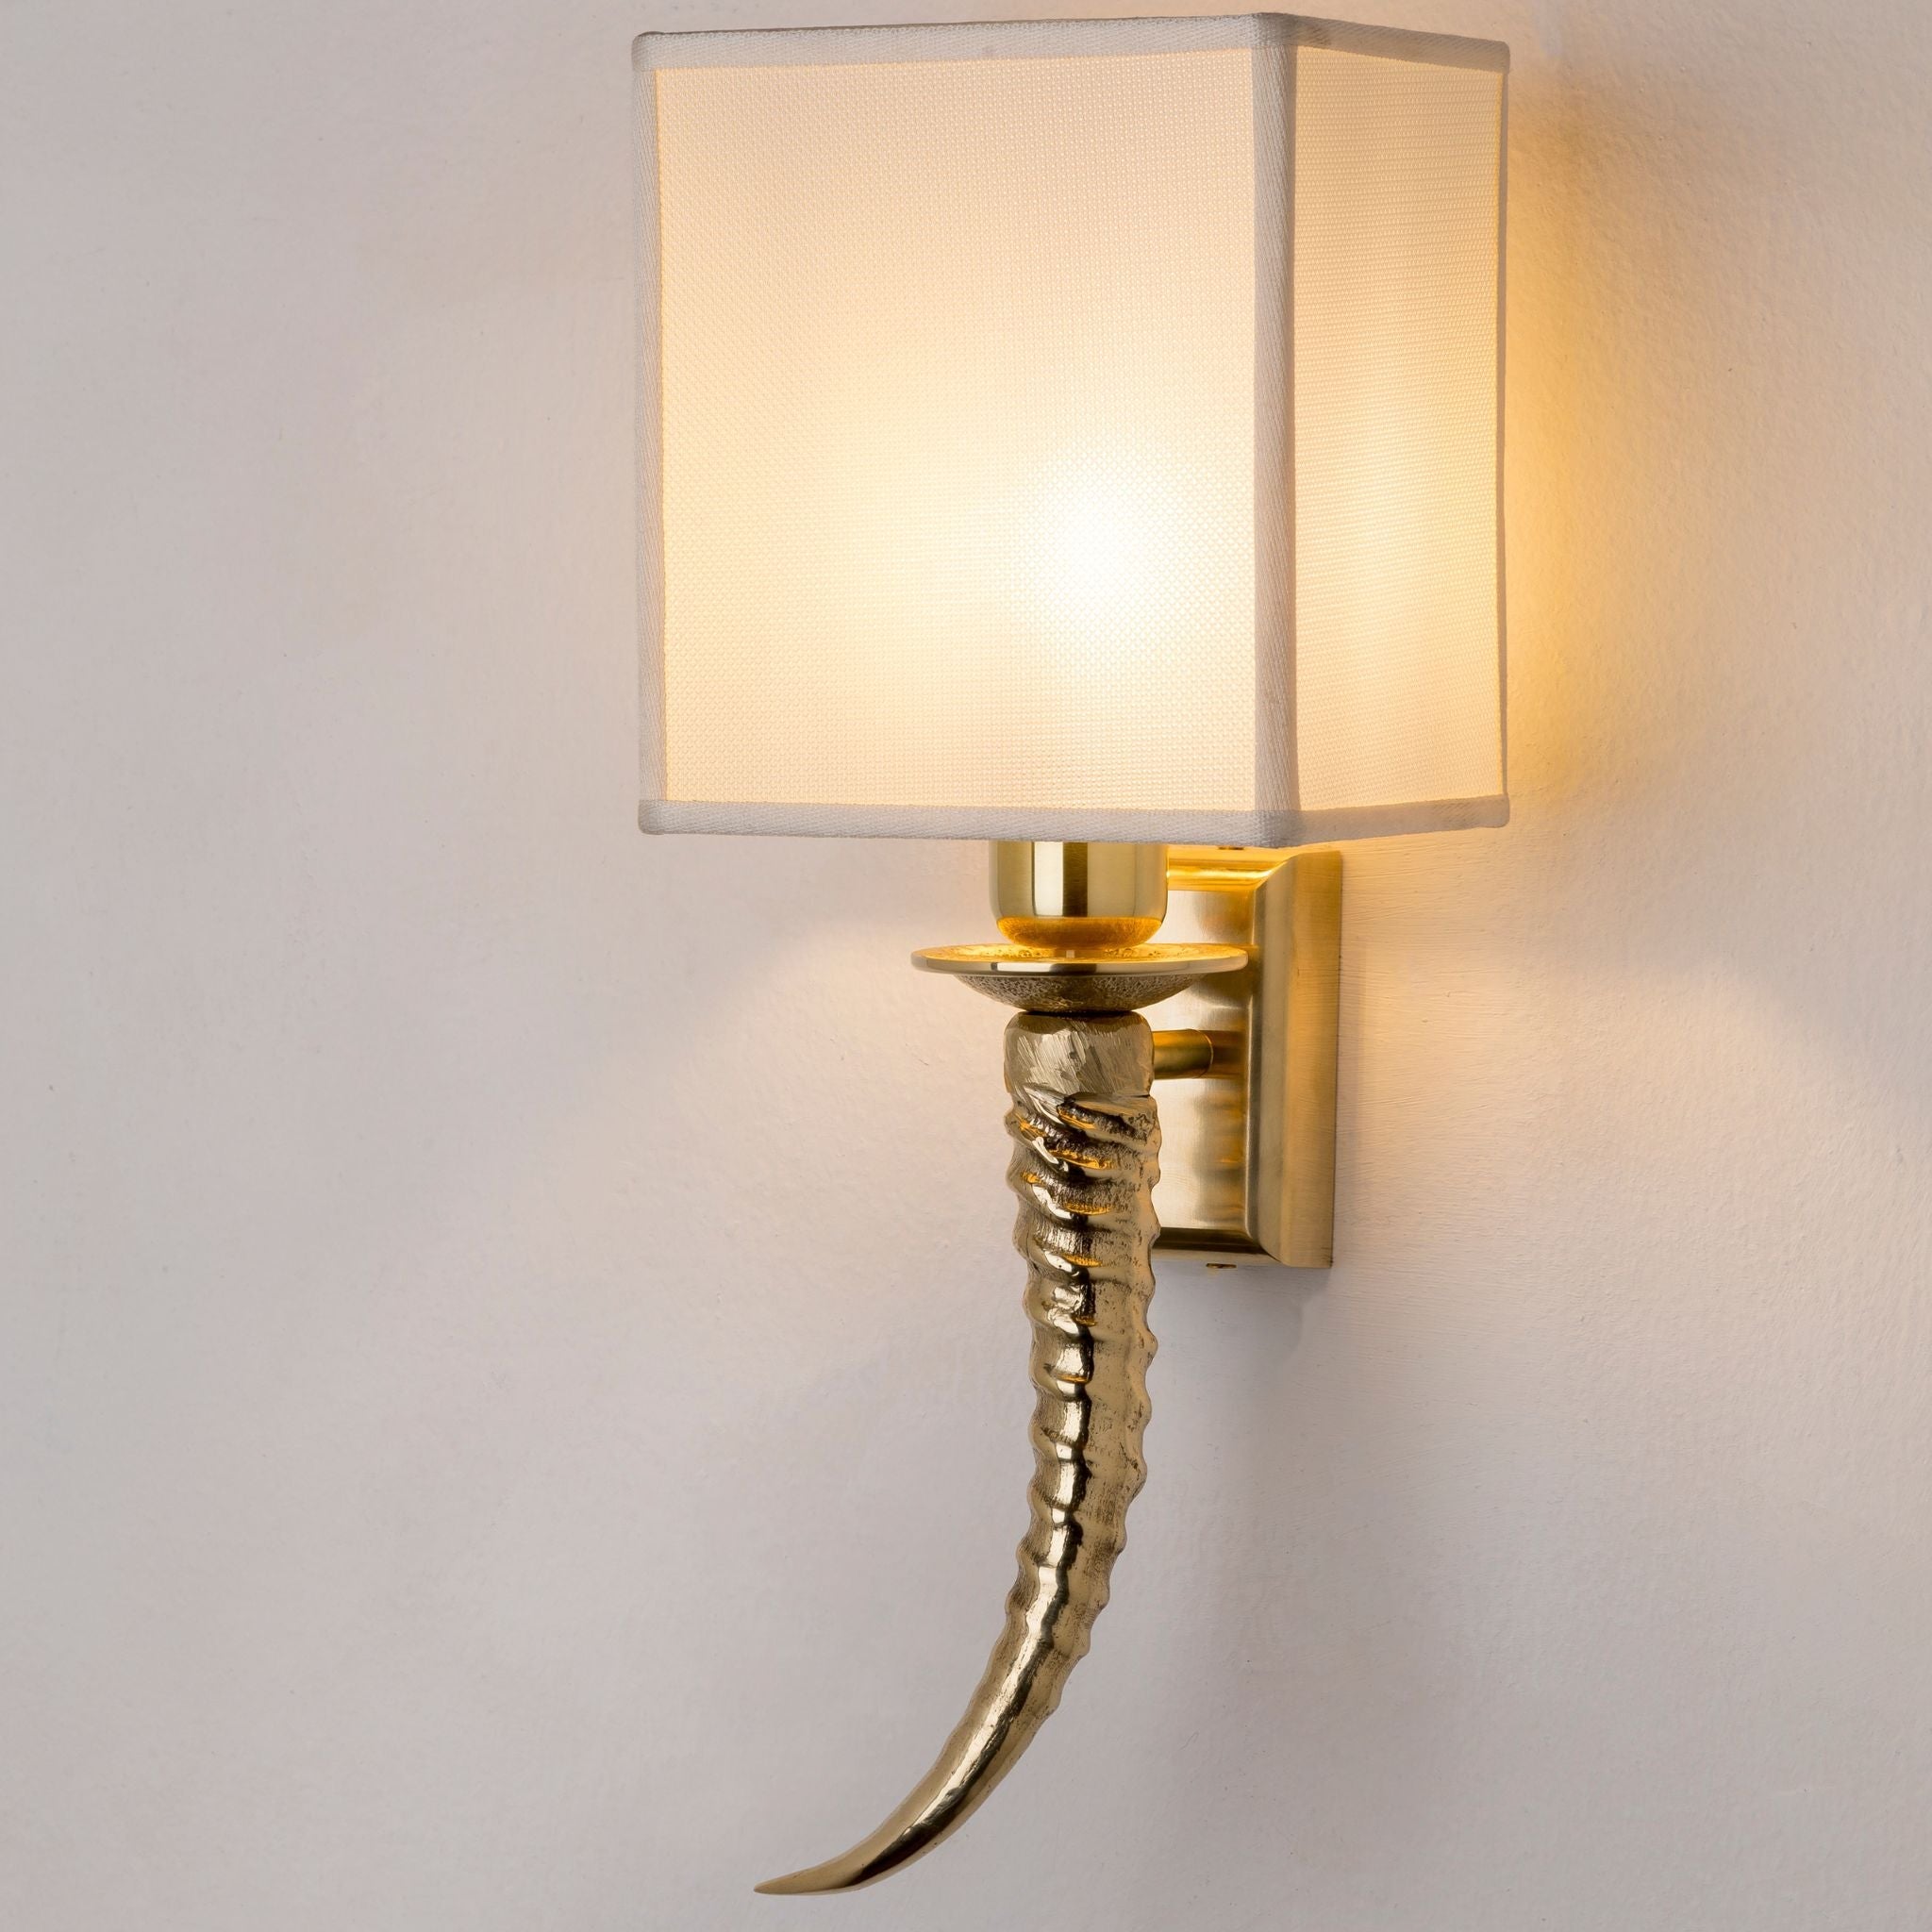 Horn brass wall light - ilbronzetto